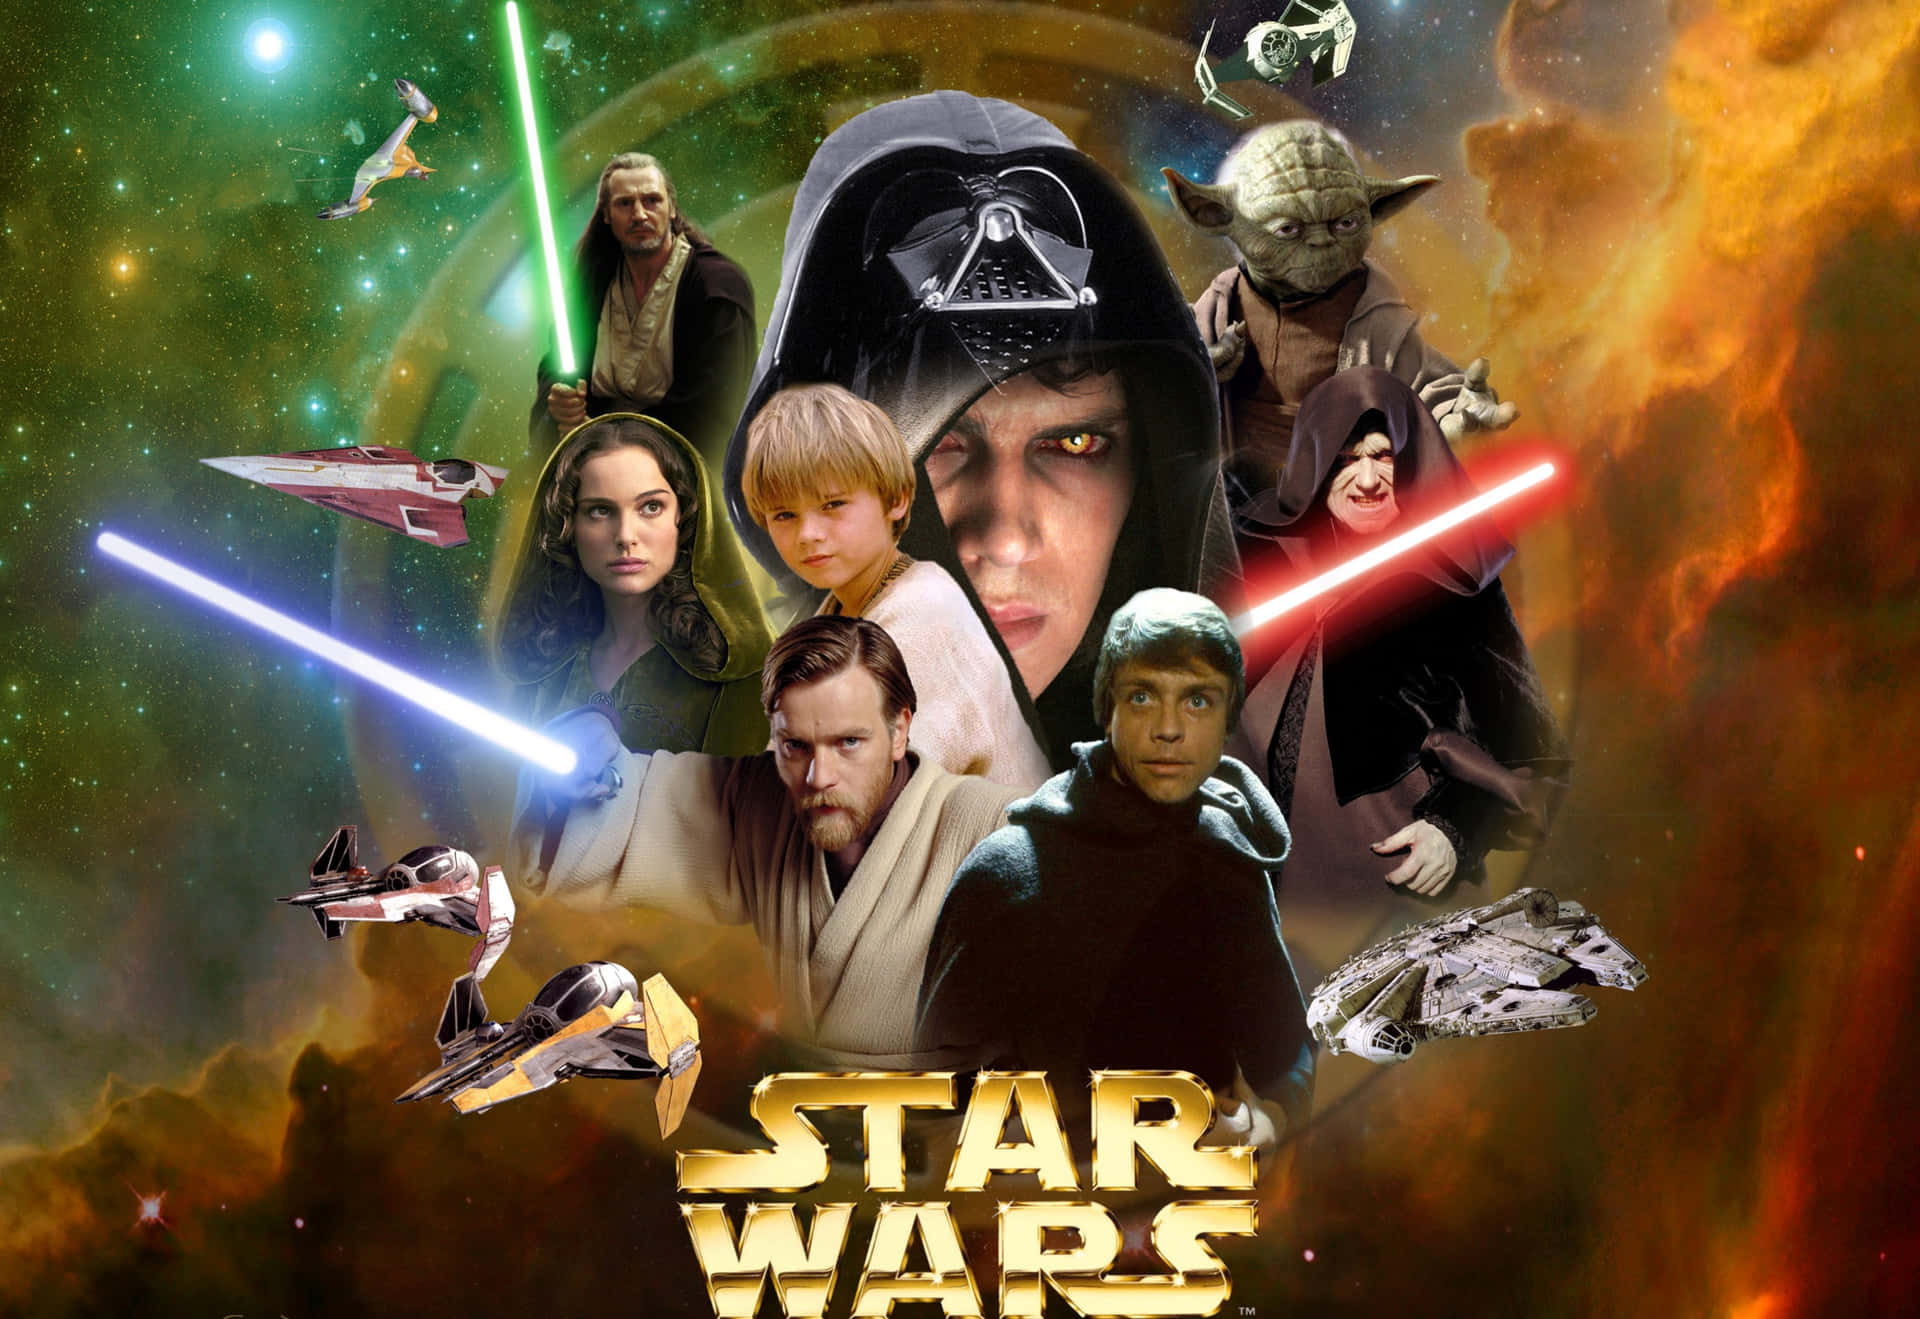 Imagemde Personagens De Star Wars Na Galáxia.